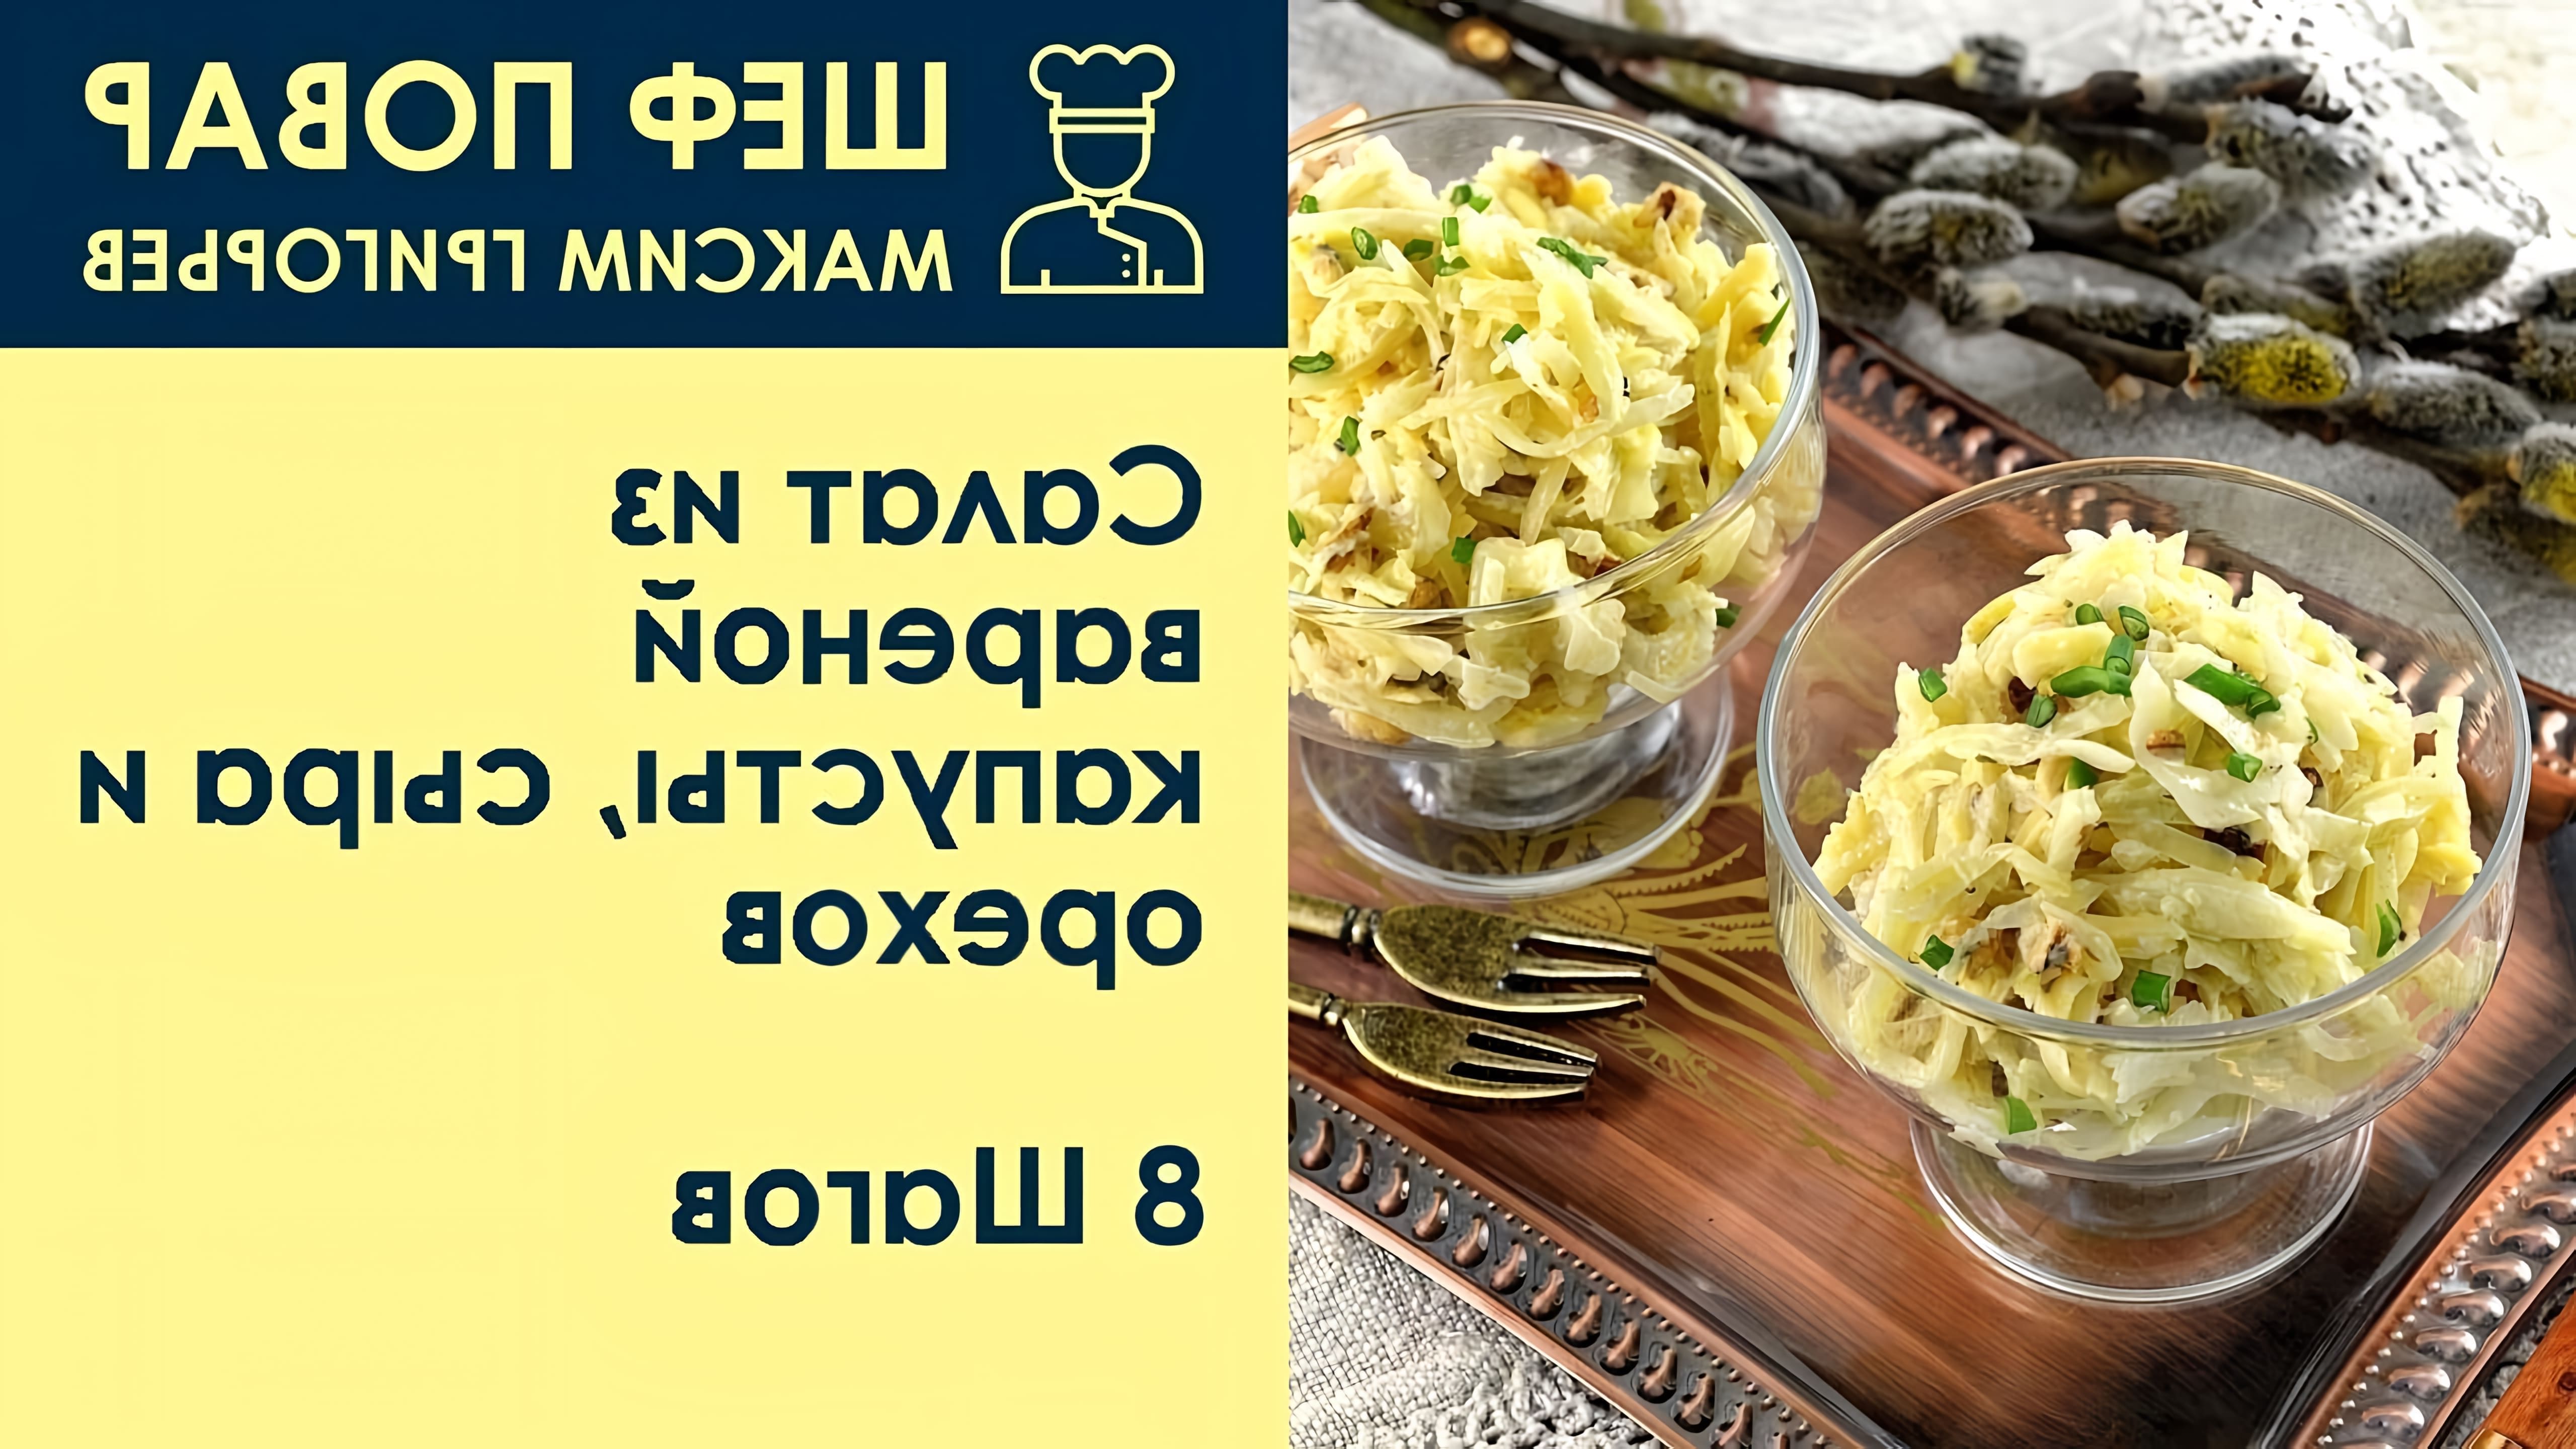 В этом видео шеф-повар Максим Григорьев представляет рецепт салата из вареной капусты, сыра и орехов